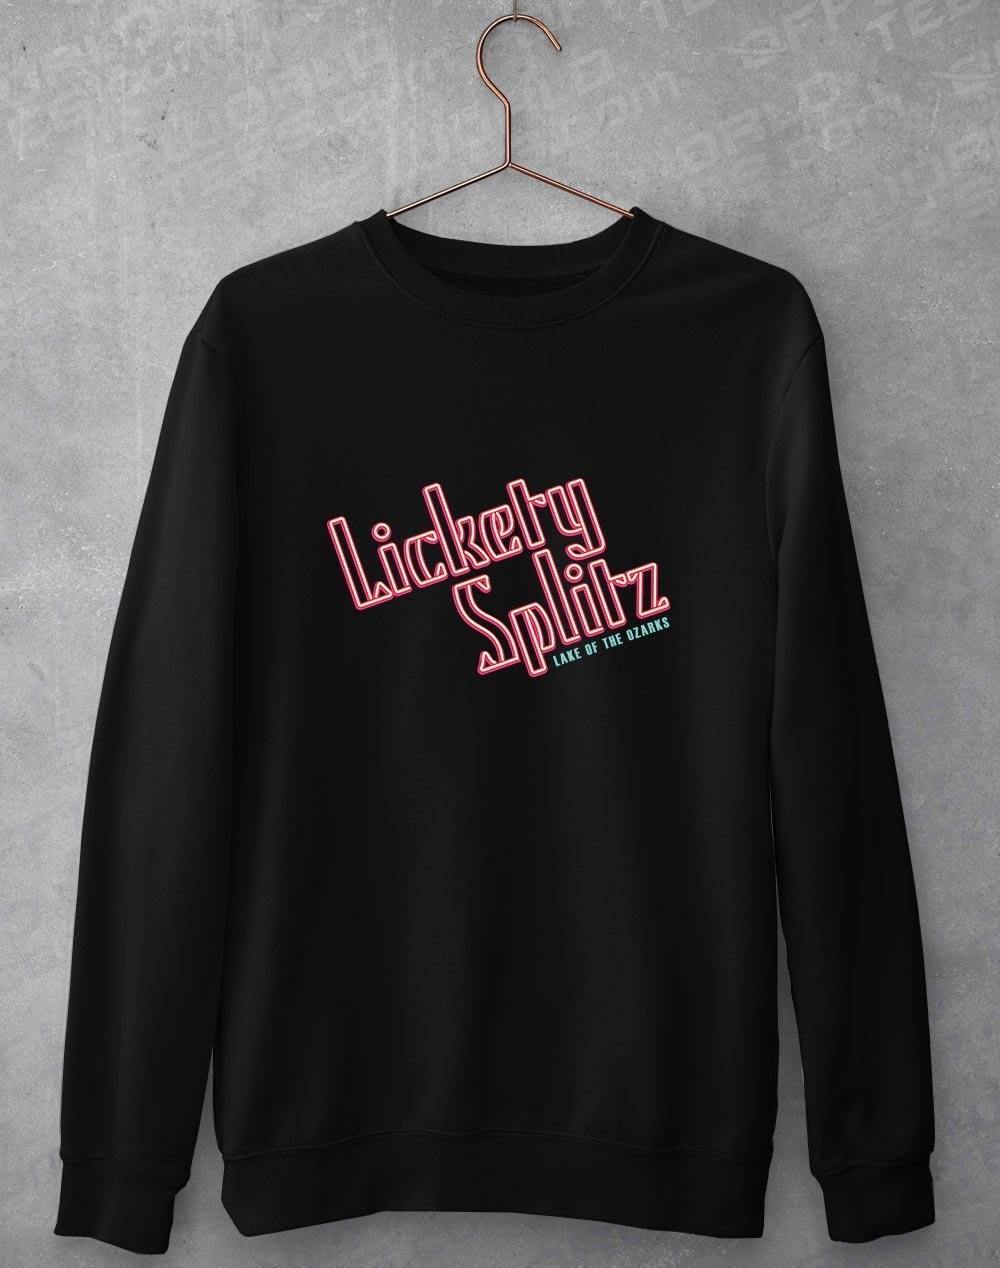 Lickety Splitz Sweatshirt S / Black  - Off World Tees